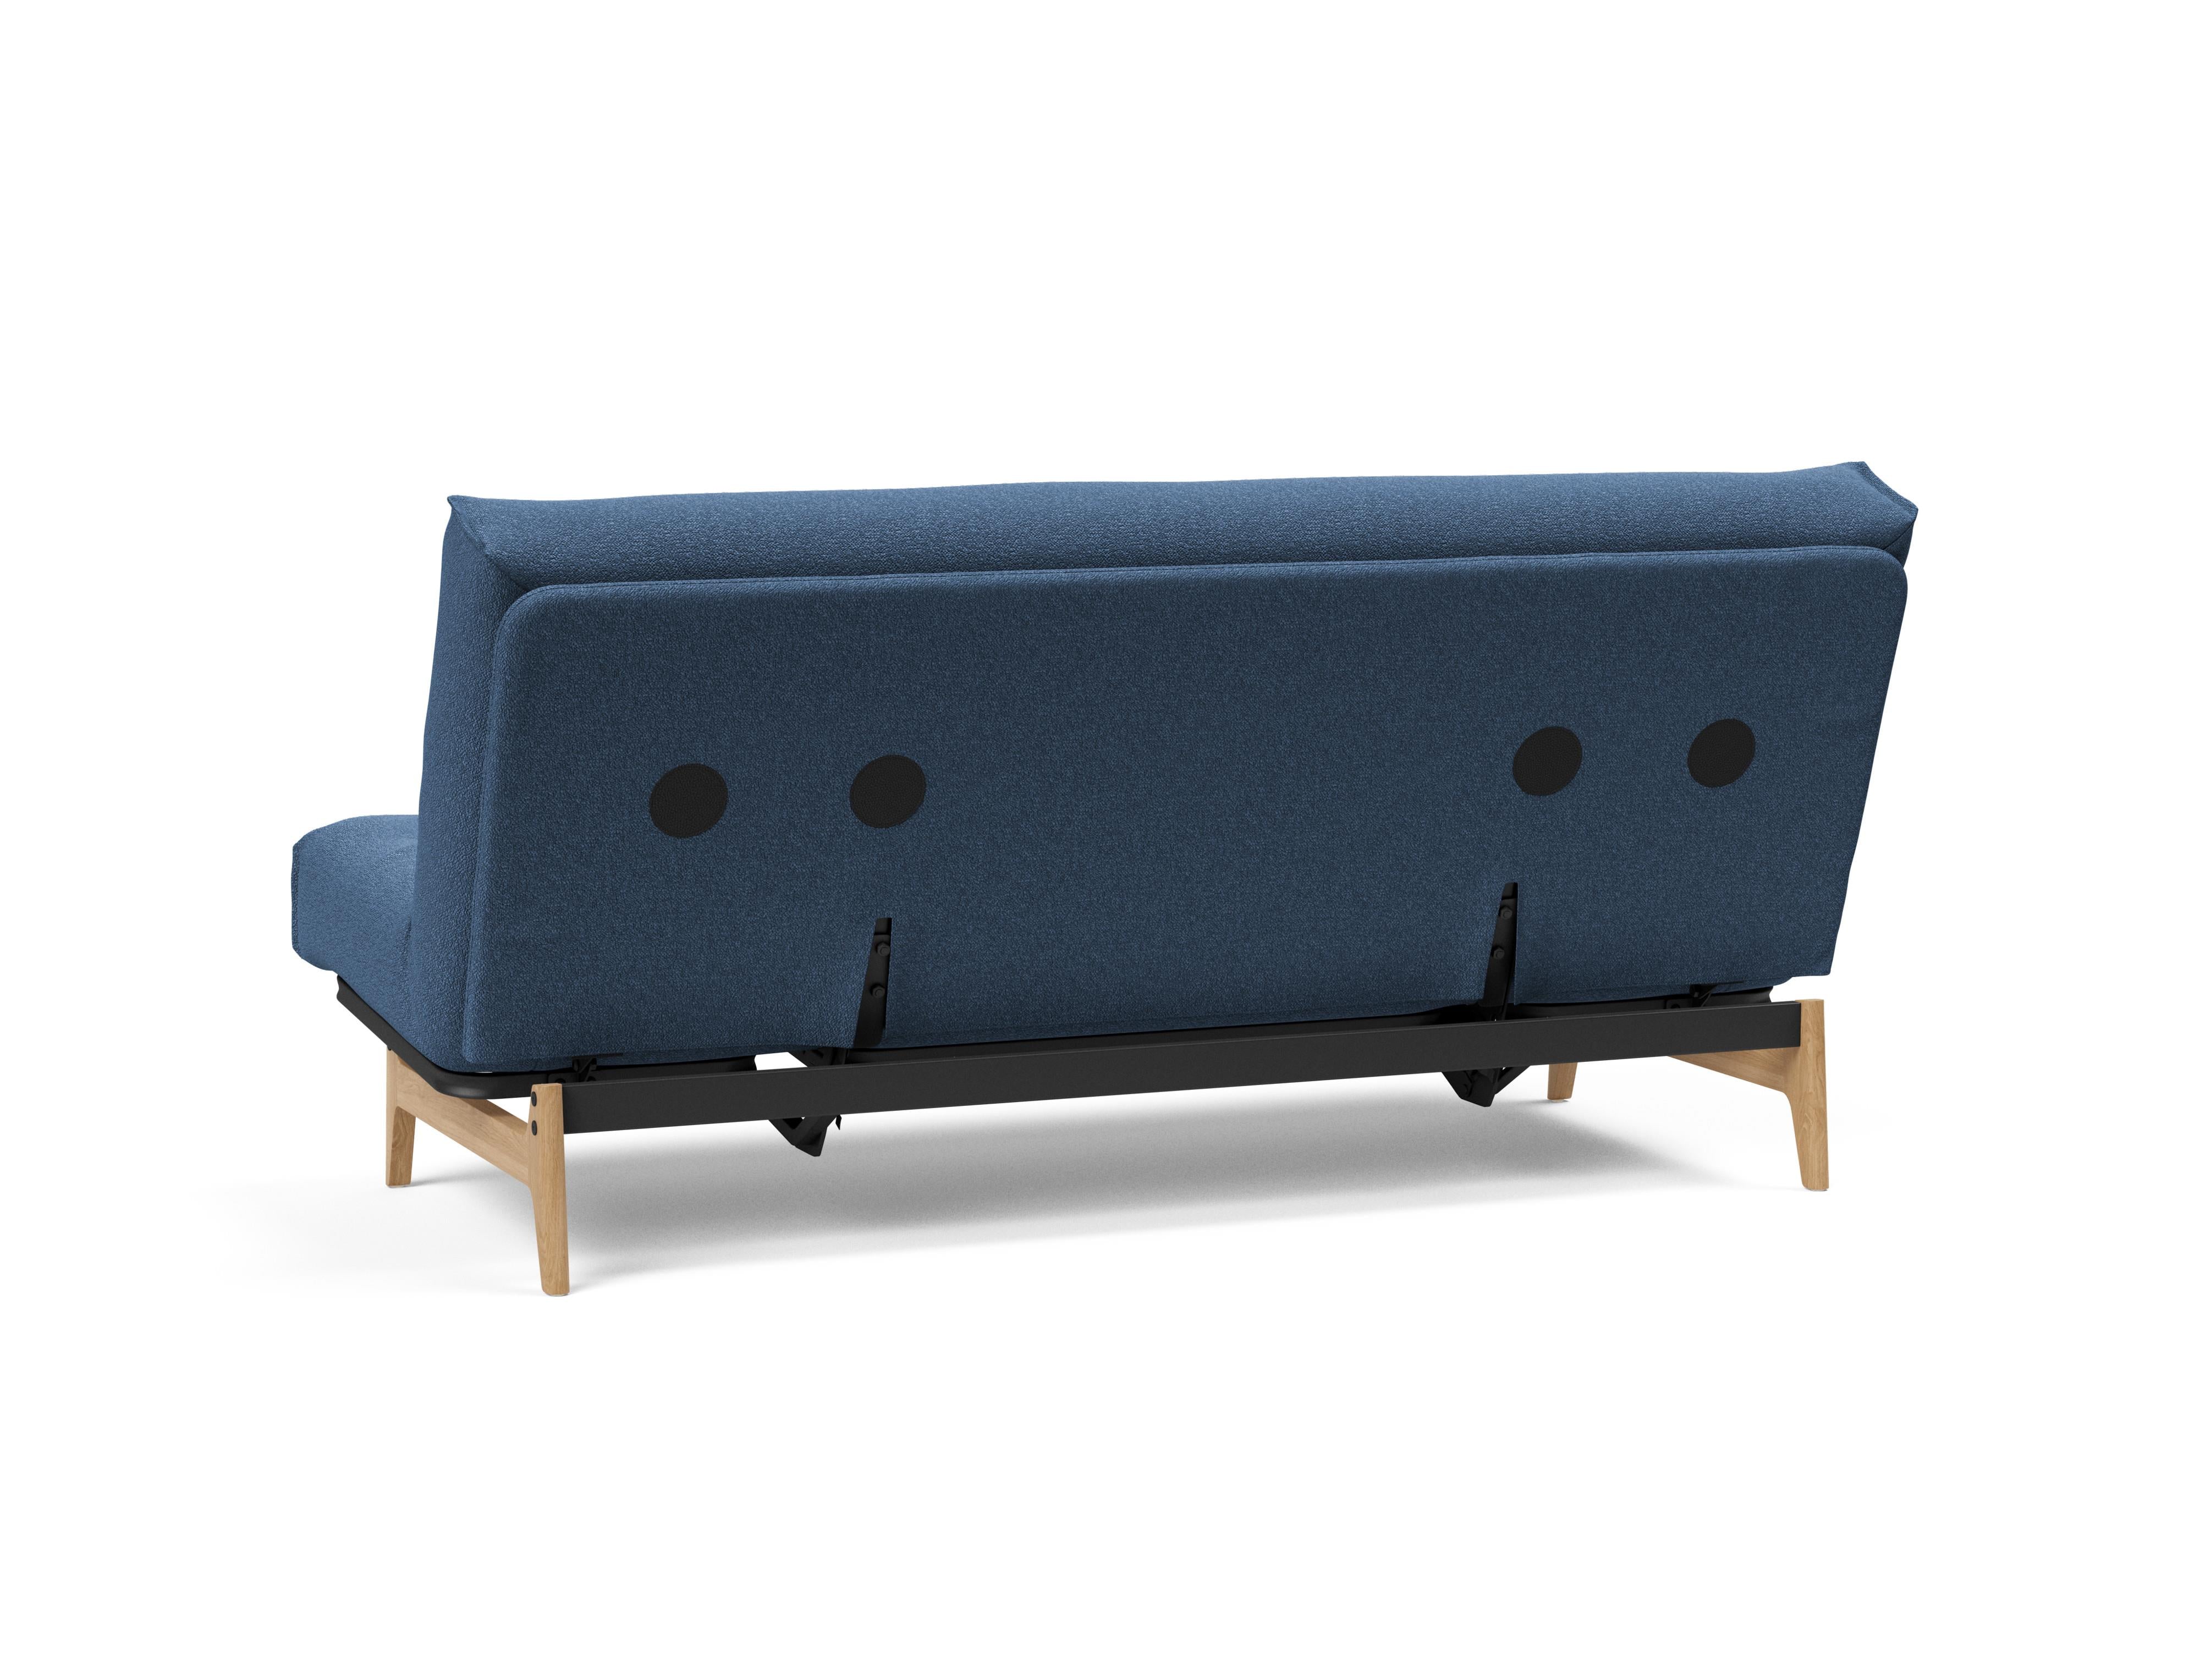 Aslak 140 Bettsofa Nordic in Blau 537 präsentiert im Onlineshop von KAQTU Design AG. Bettsofa ist von Innovation Living